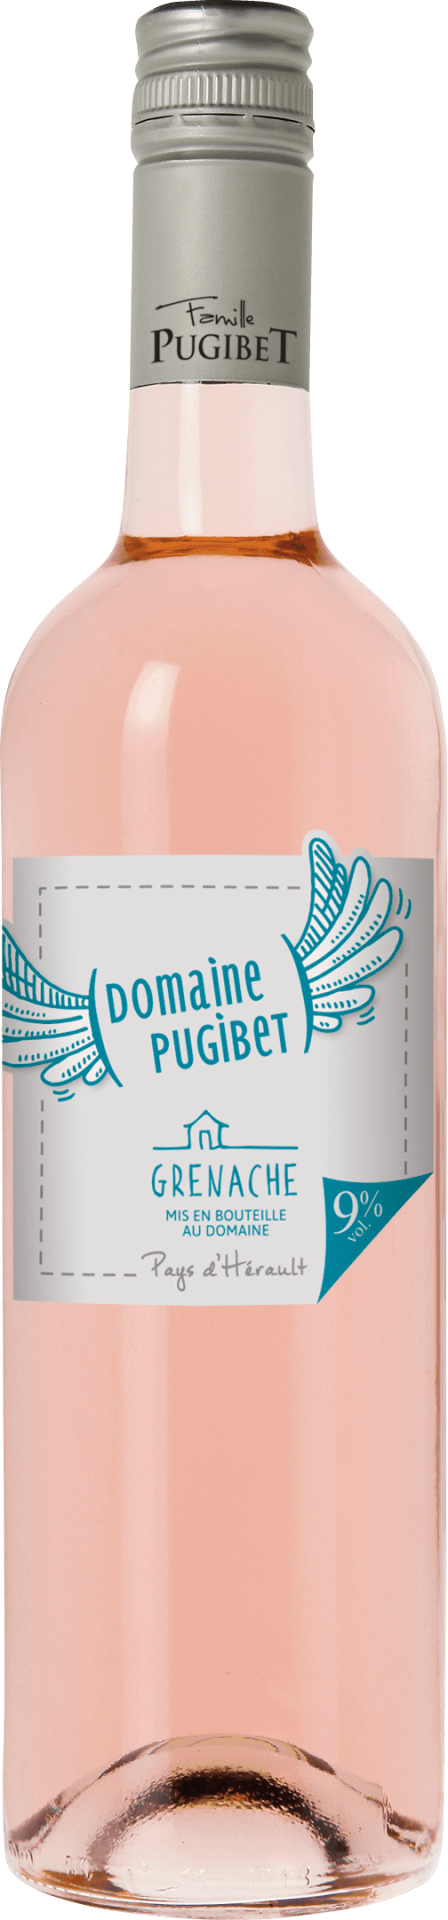 Pugibet Rosé, Grenache